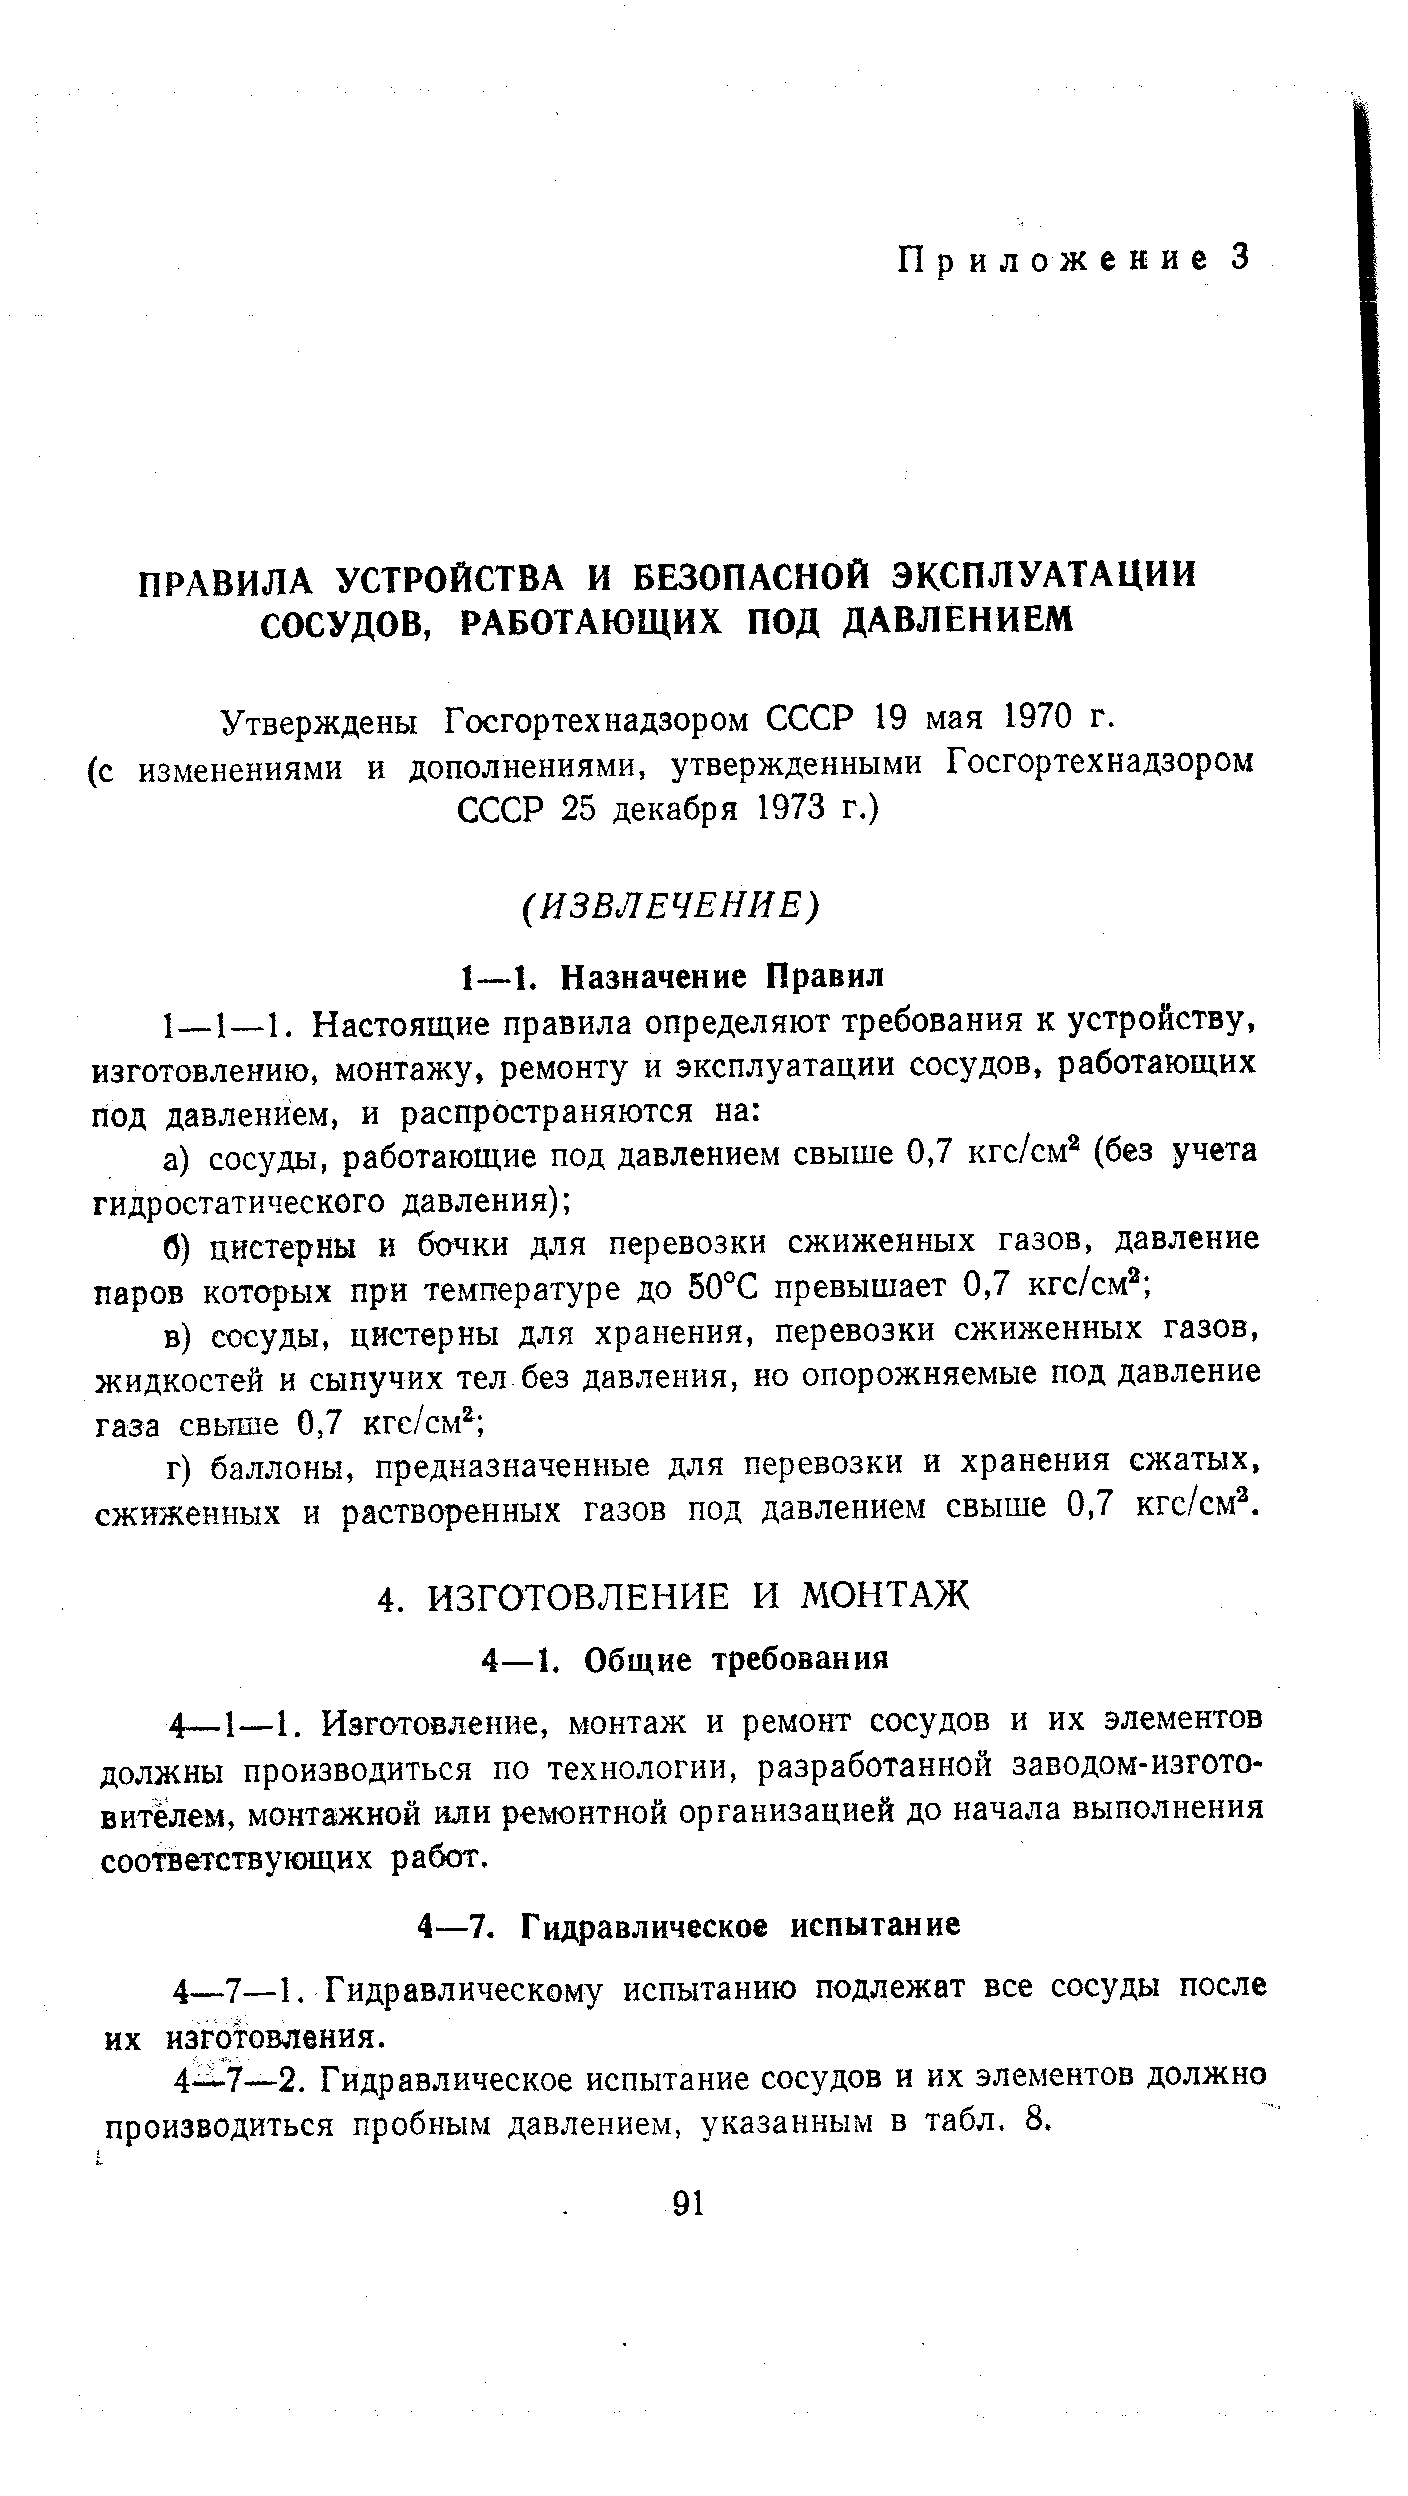 Утверждены Госгортехнадзором СССР 19 мая 1970 г.